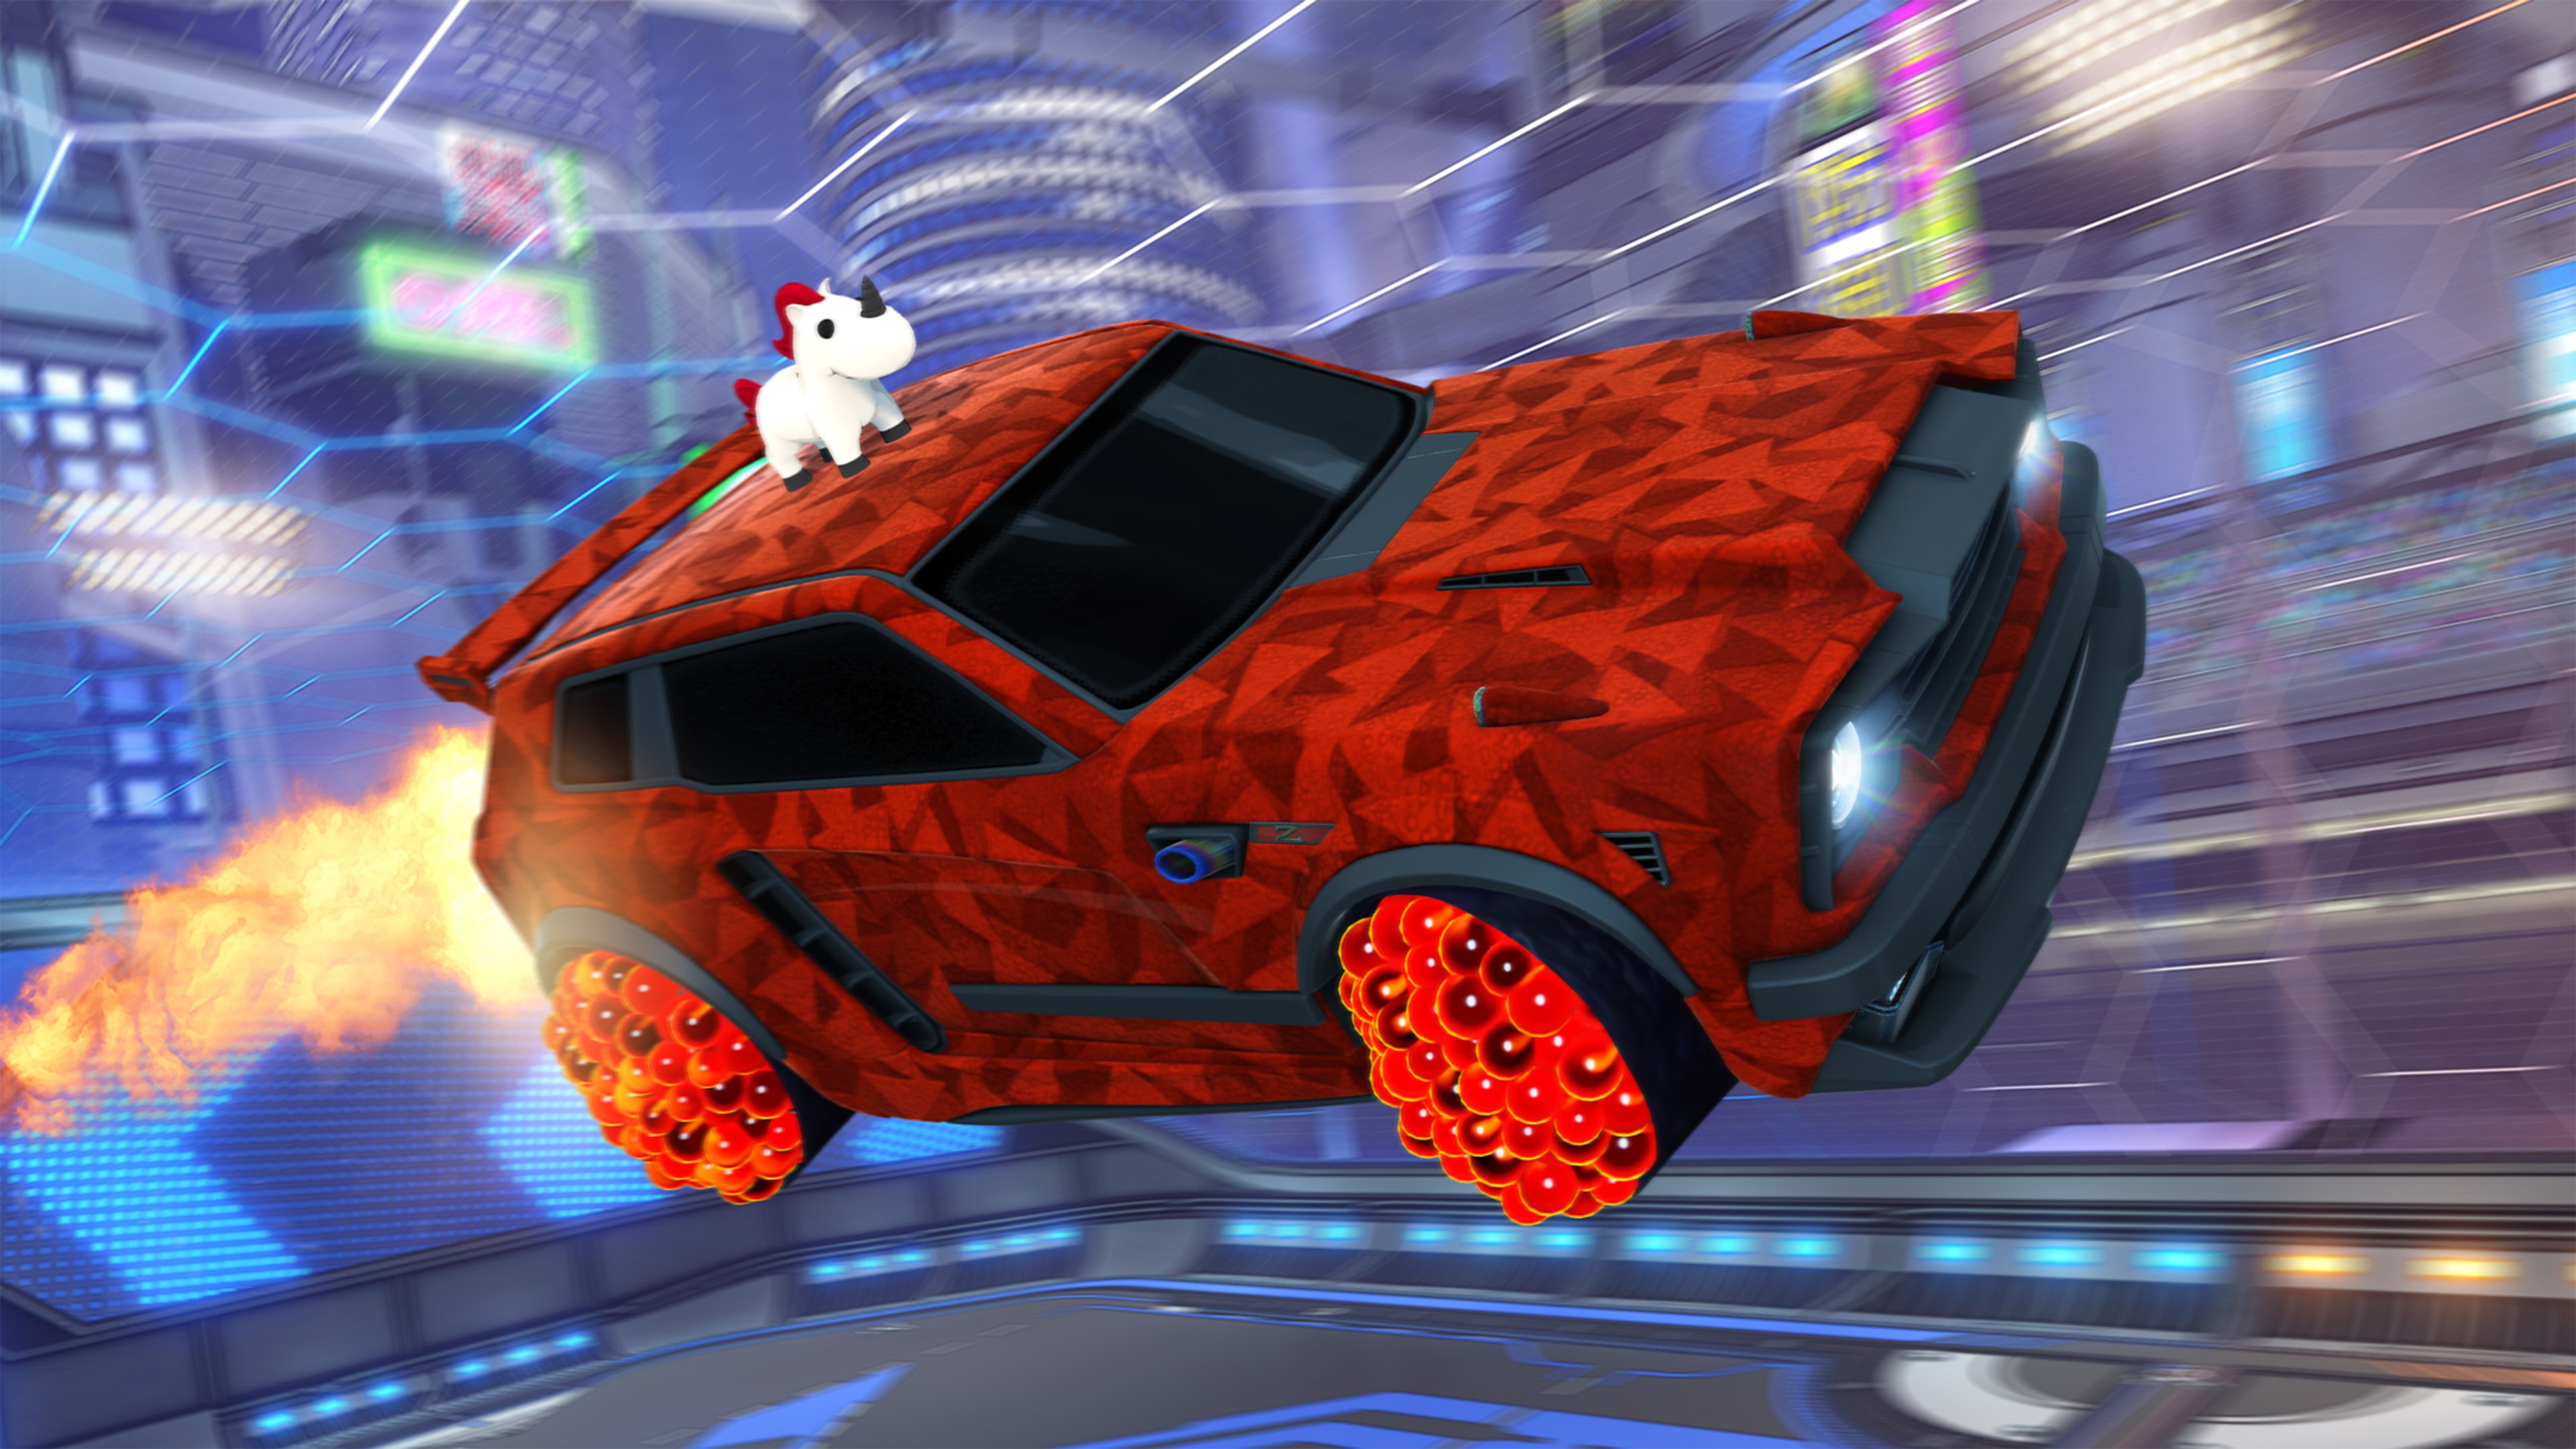 Rocket League – Captură de ecran cu mașină care are un unicorn pictat pe acoperiș și motive geometrice roșii pe caroserie